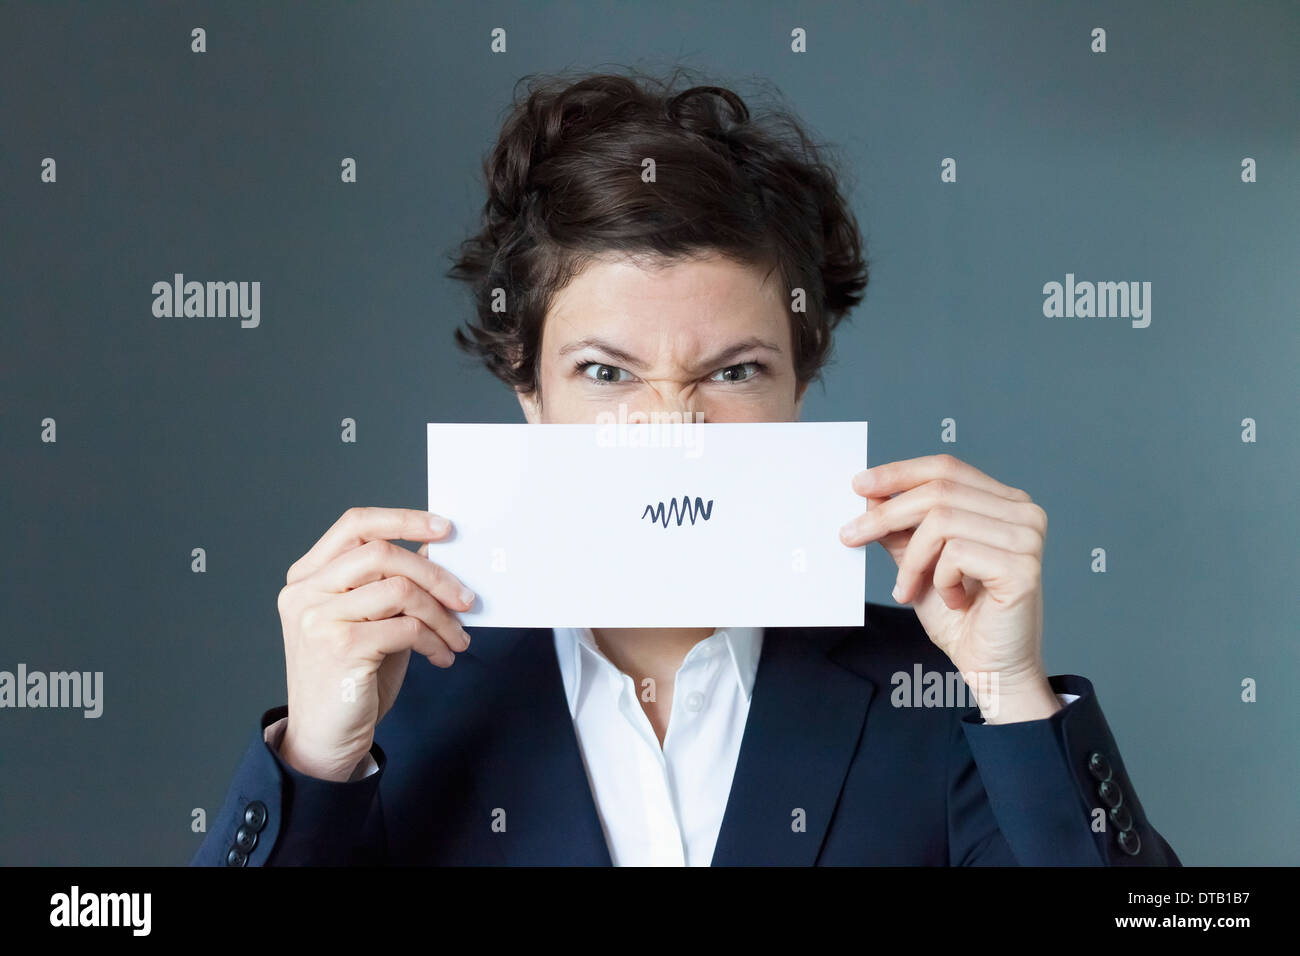 Portrait of mid adult woman holding paper avec signe en zigzag, close-up Banque D'Images